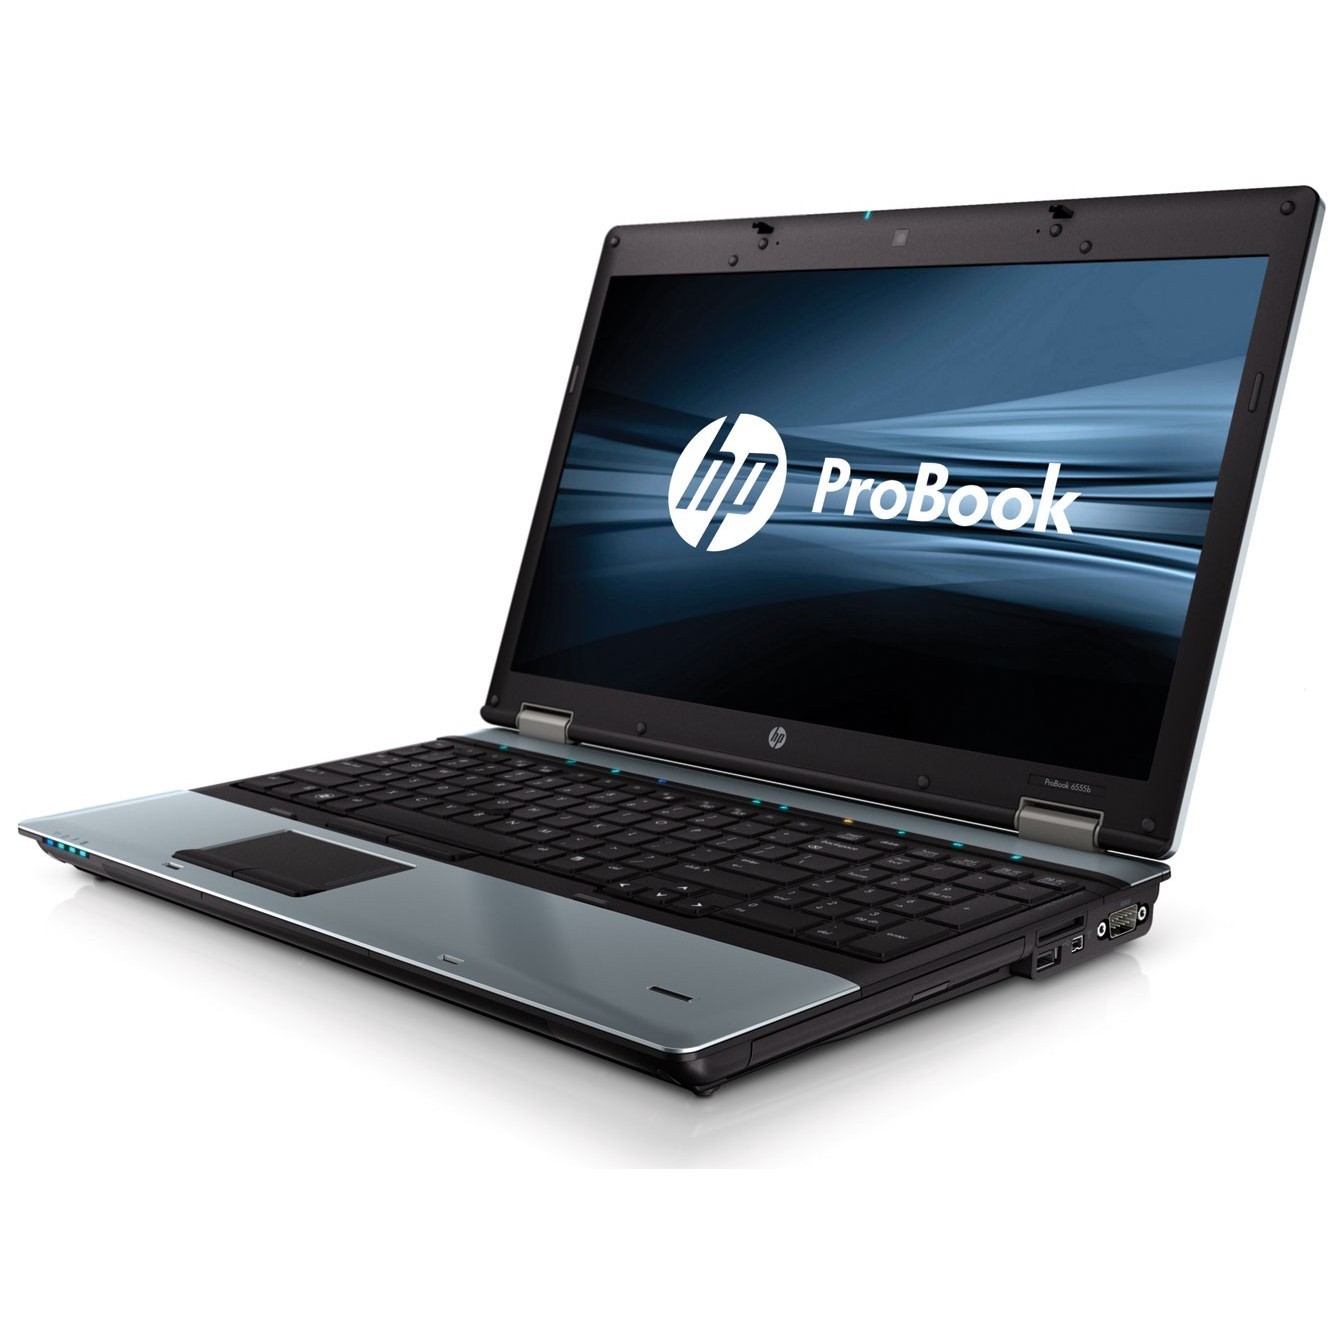 Ноутбуки HP 6550B-WD706EA